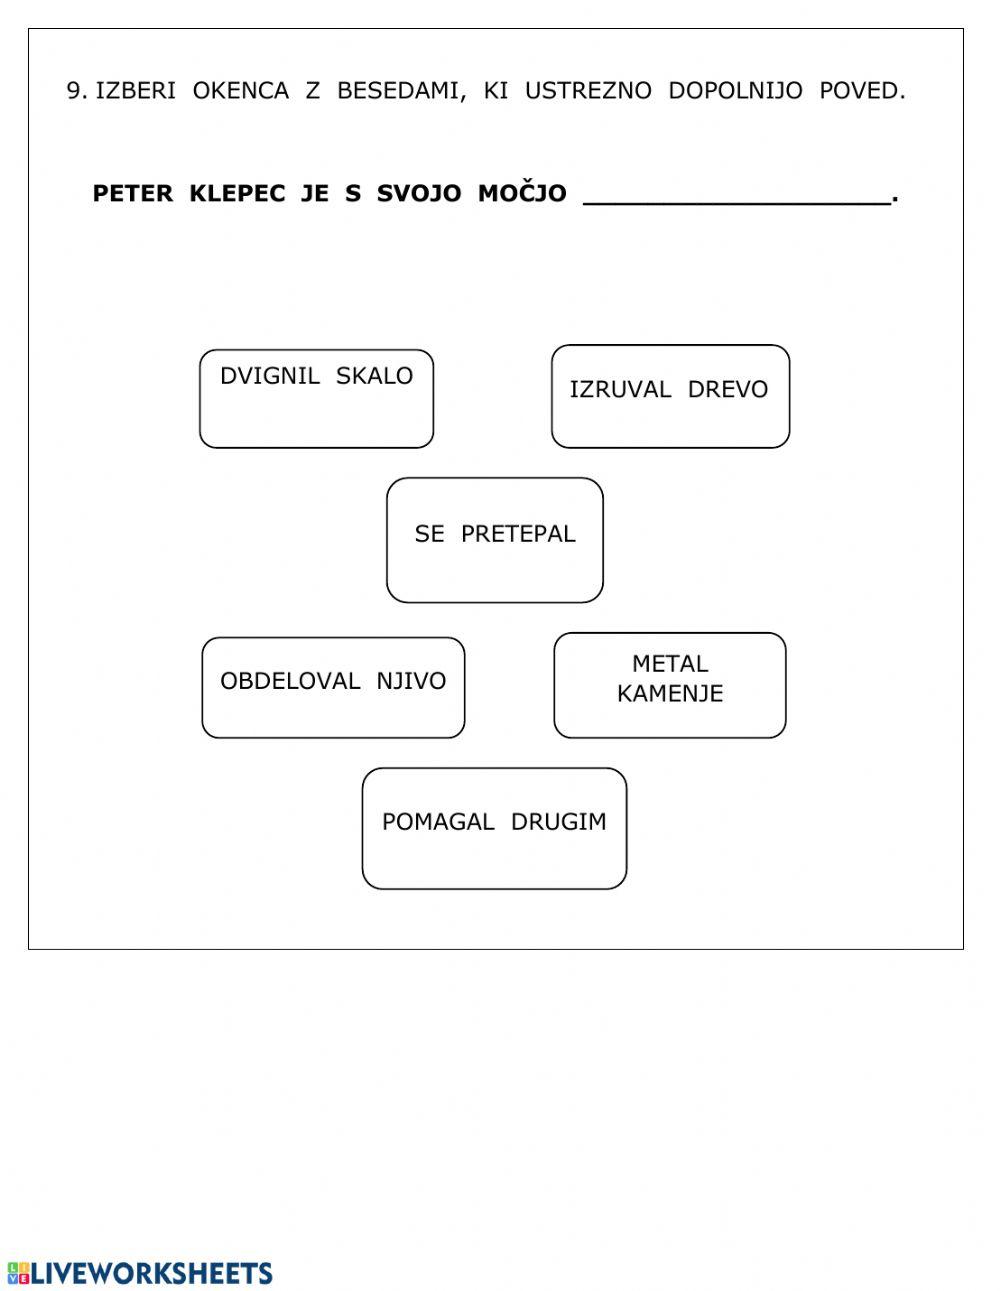 Razumevanje umetnostnega besedila - Peter Klepec